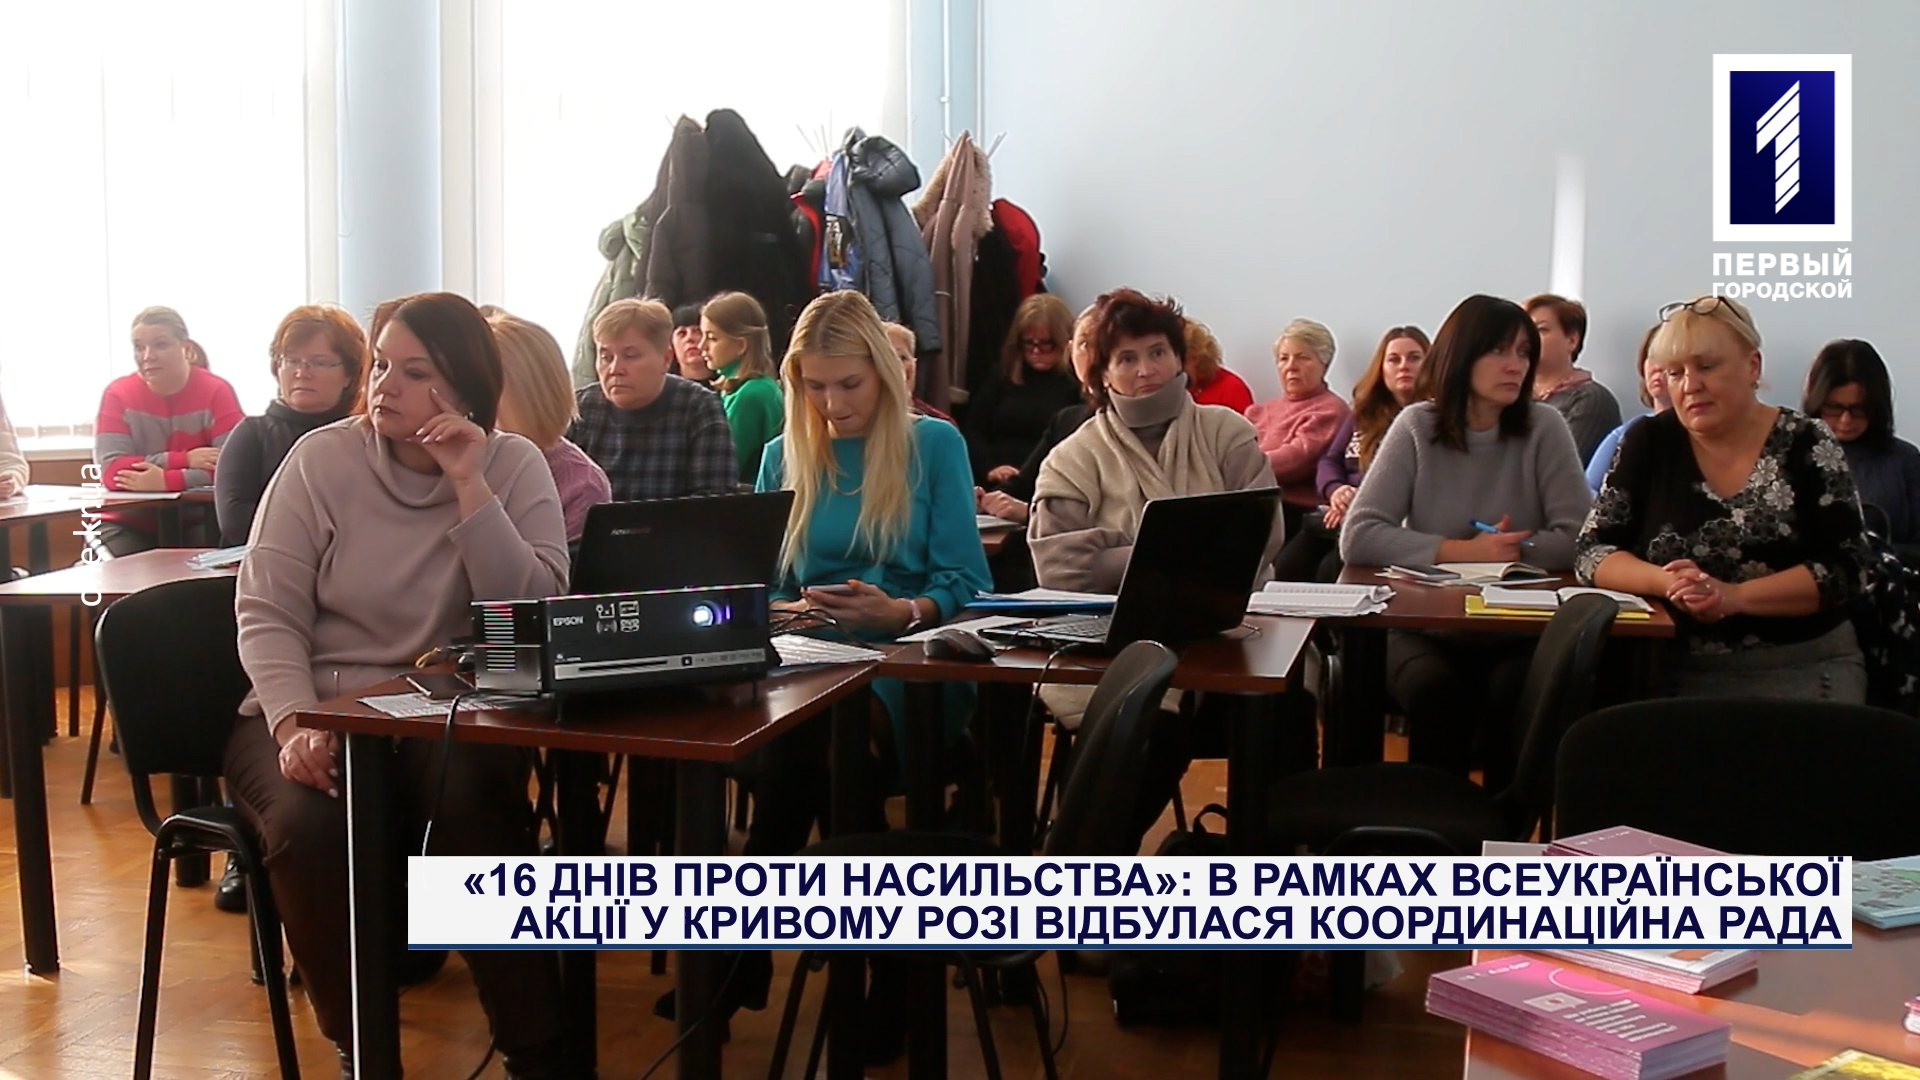 «16 днів проти насильства»: в рамках всеукраїнської акції у Кривому Розі пройшла координаційна рада